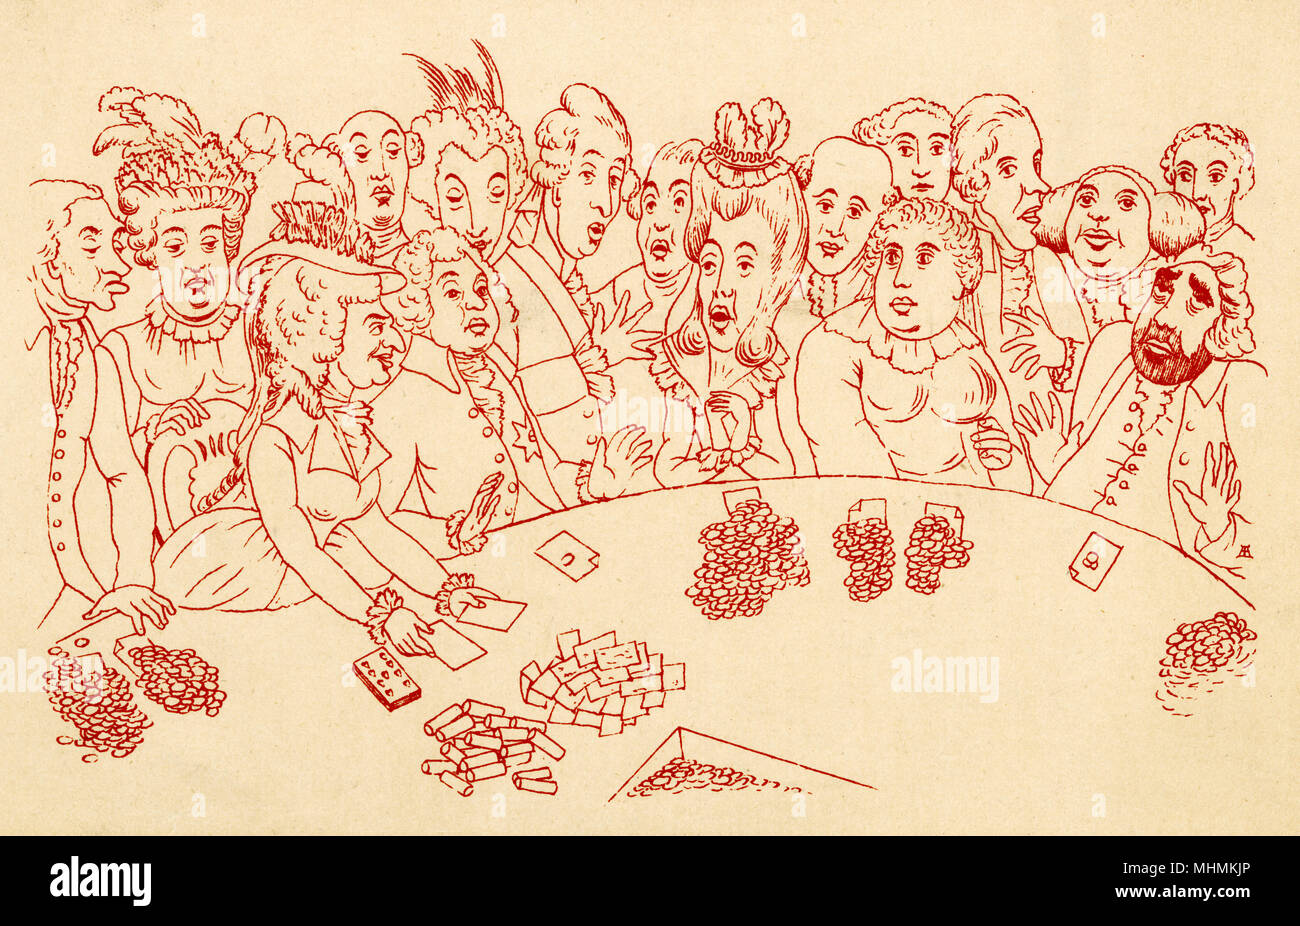 Die Teilnehmer an einem Glücksspiel Partei tragen jede Art von Gesichtsausdruck. Datum: 1790s Stockfoto